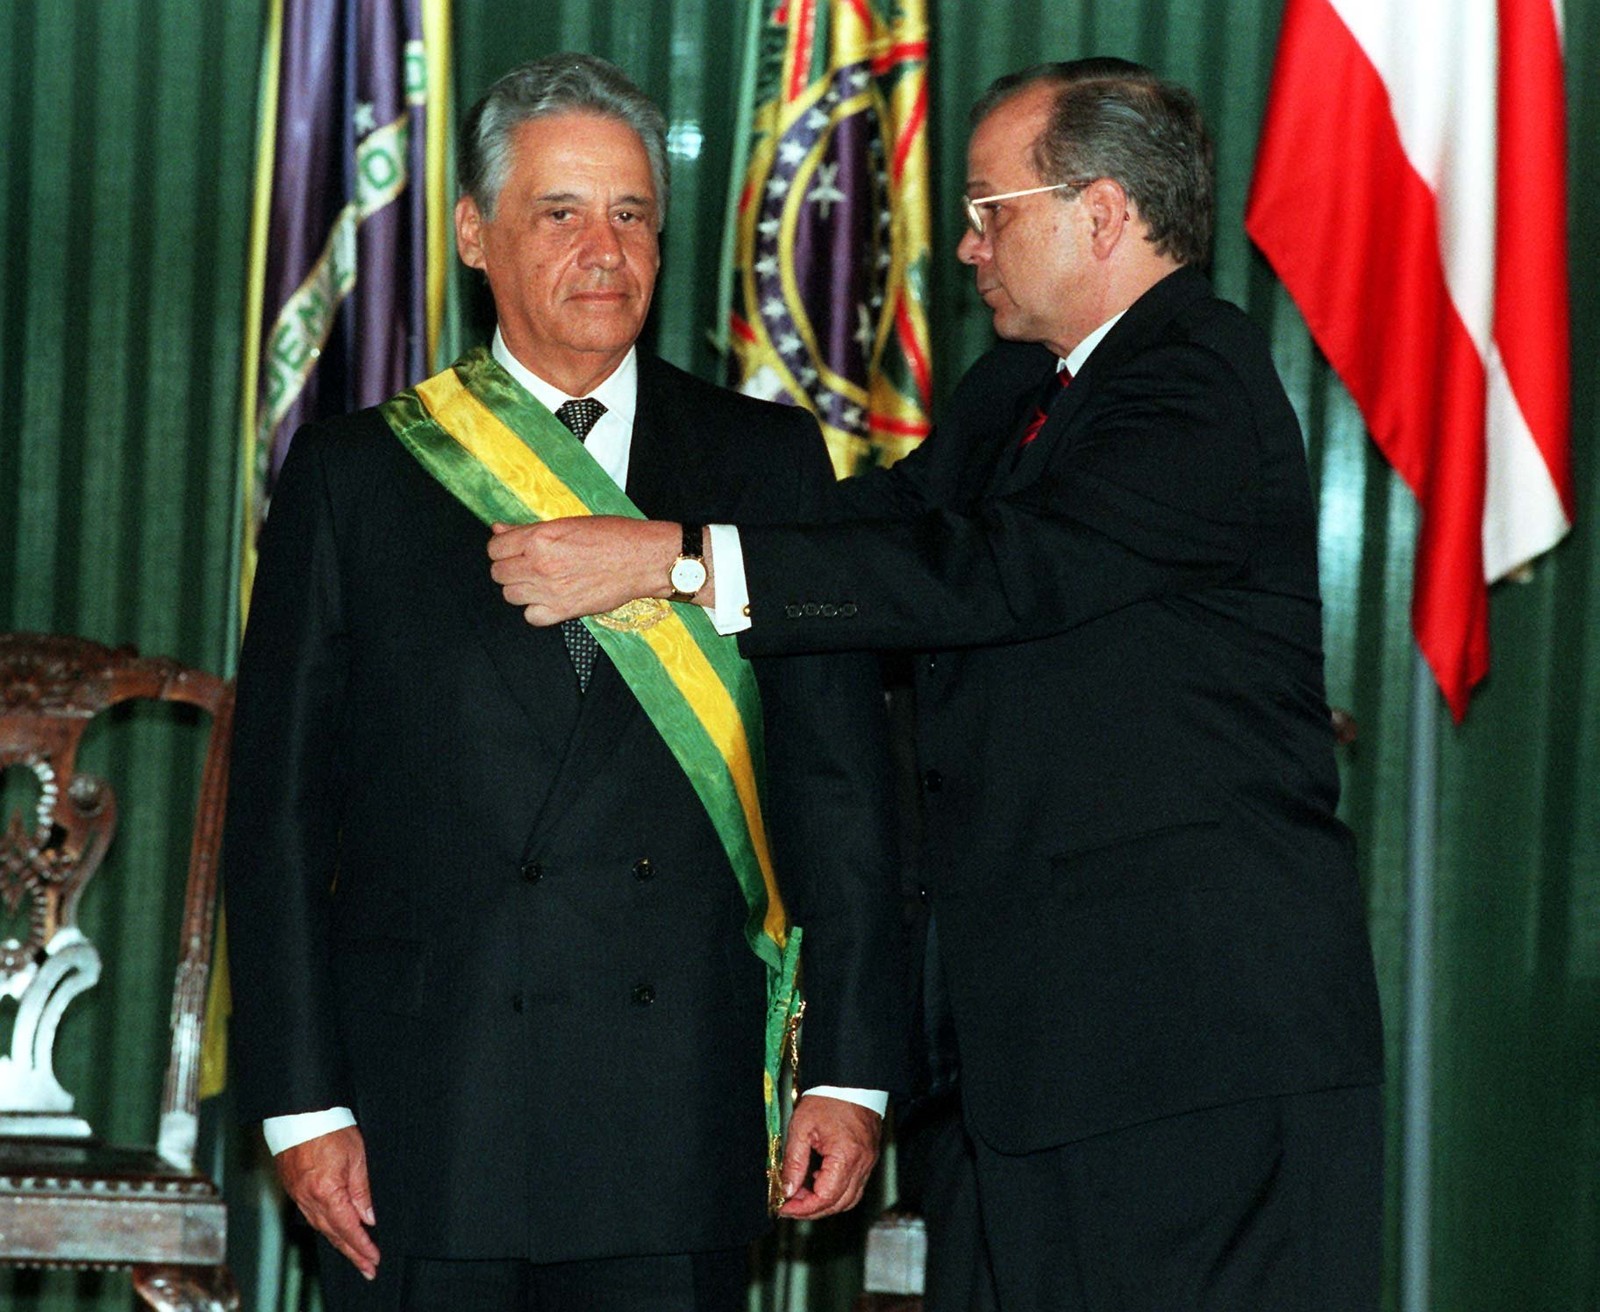 O ex-presidente Fernando Henrique Cardoso recebe do embaixador Valter Pecly a faixa presidencial. FHC governou o país entre 1995 e 2002 — Foto: ROBERTO STUCKERT FILHO